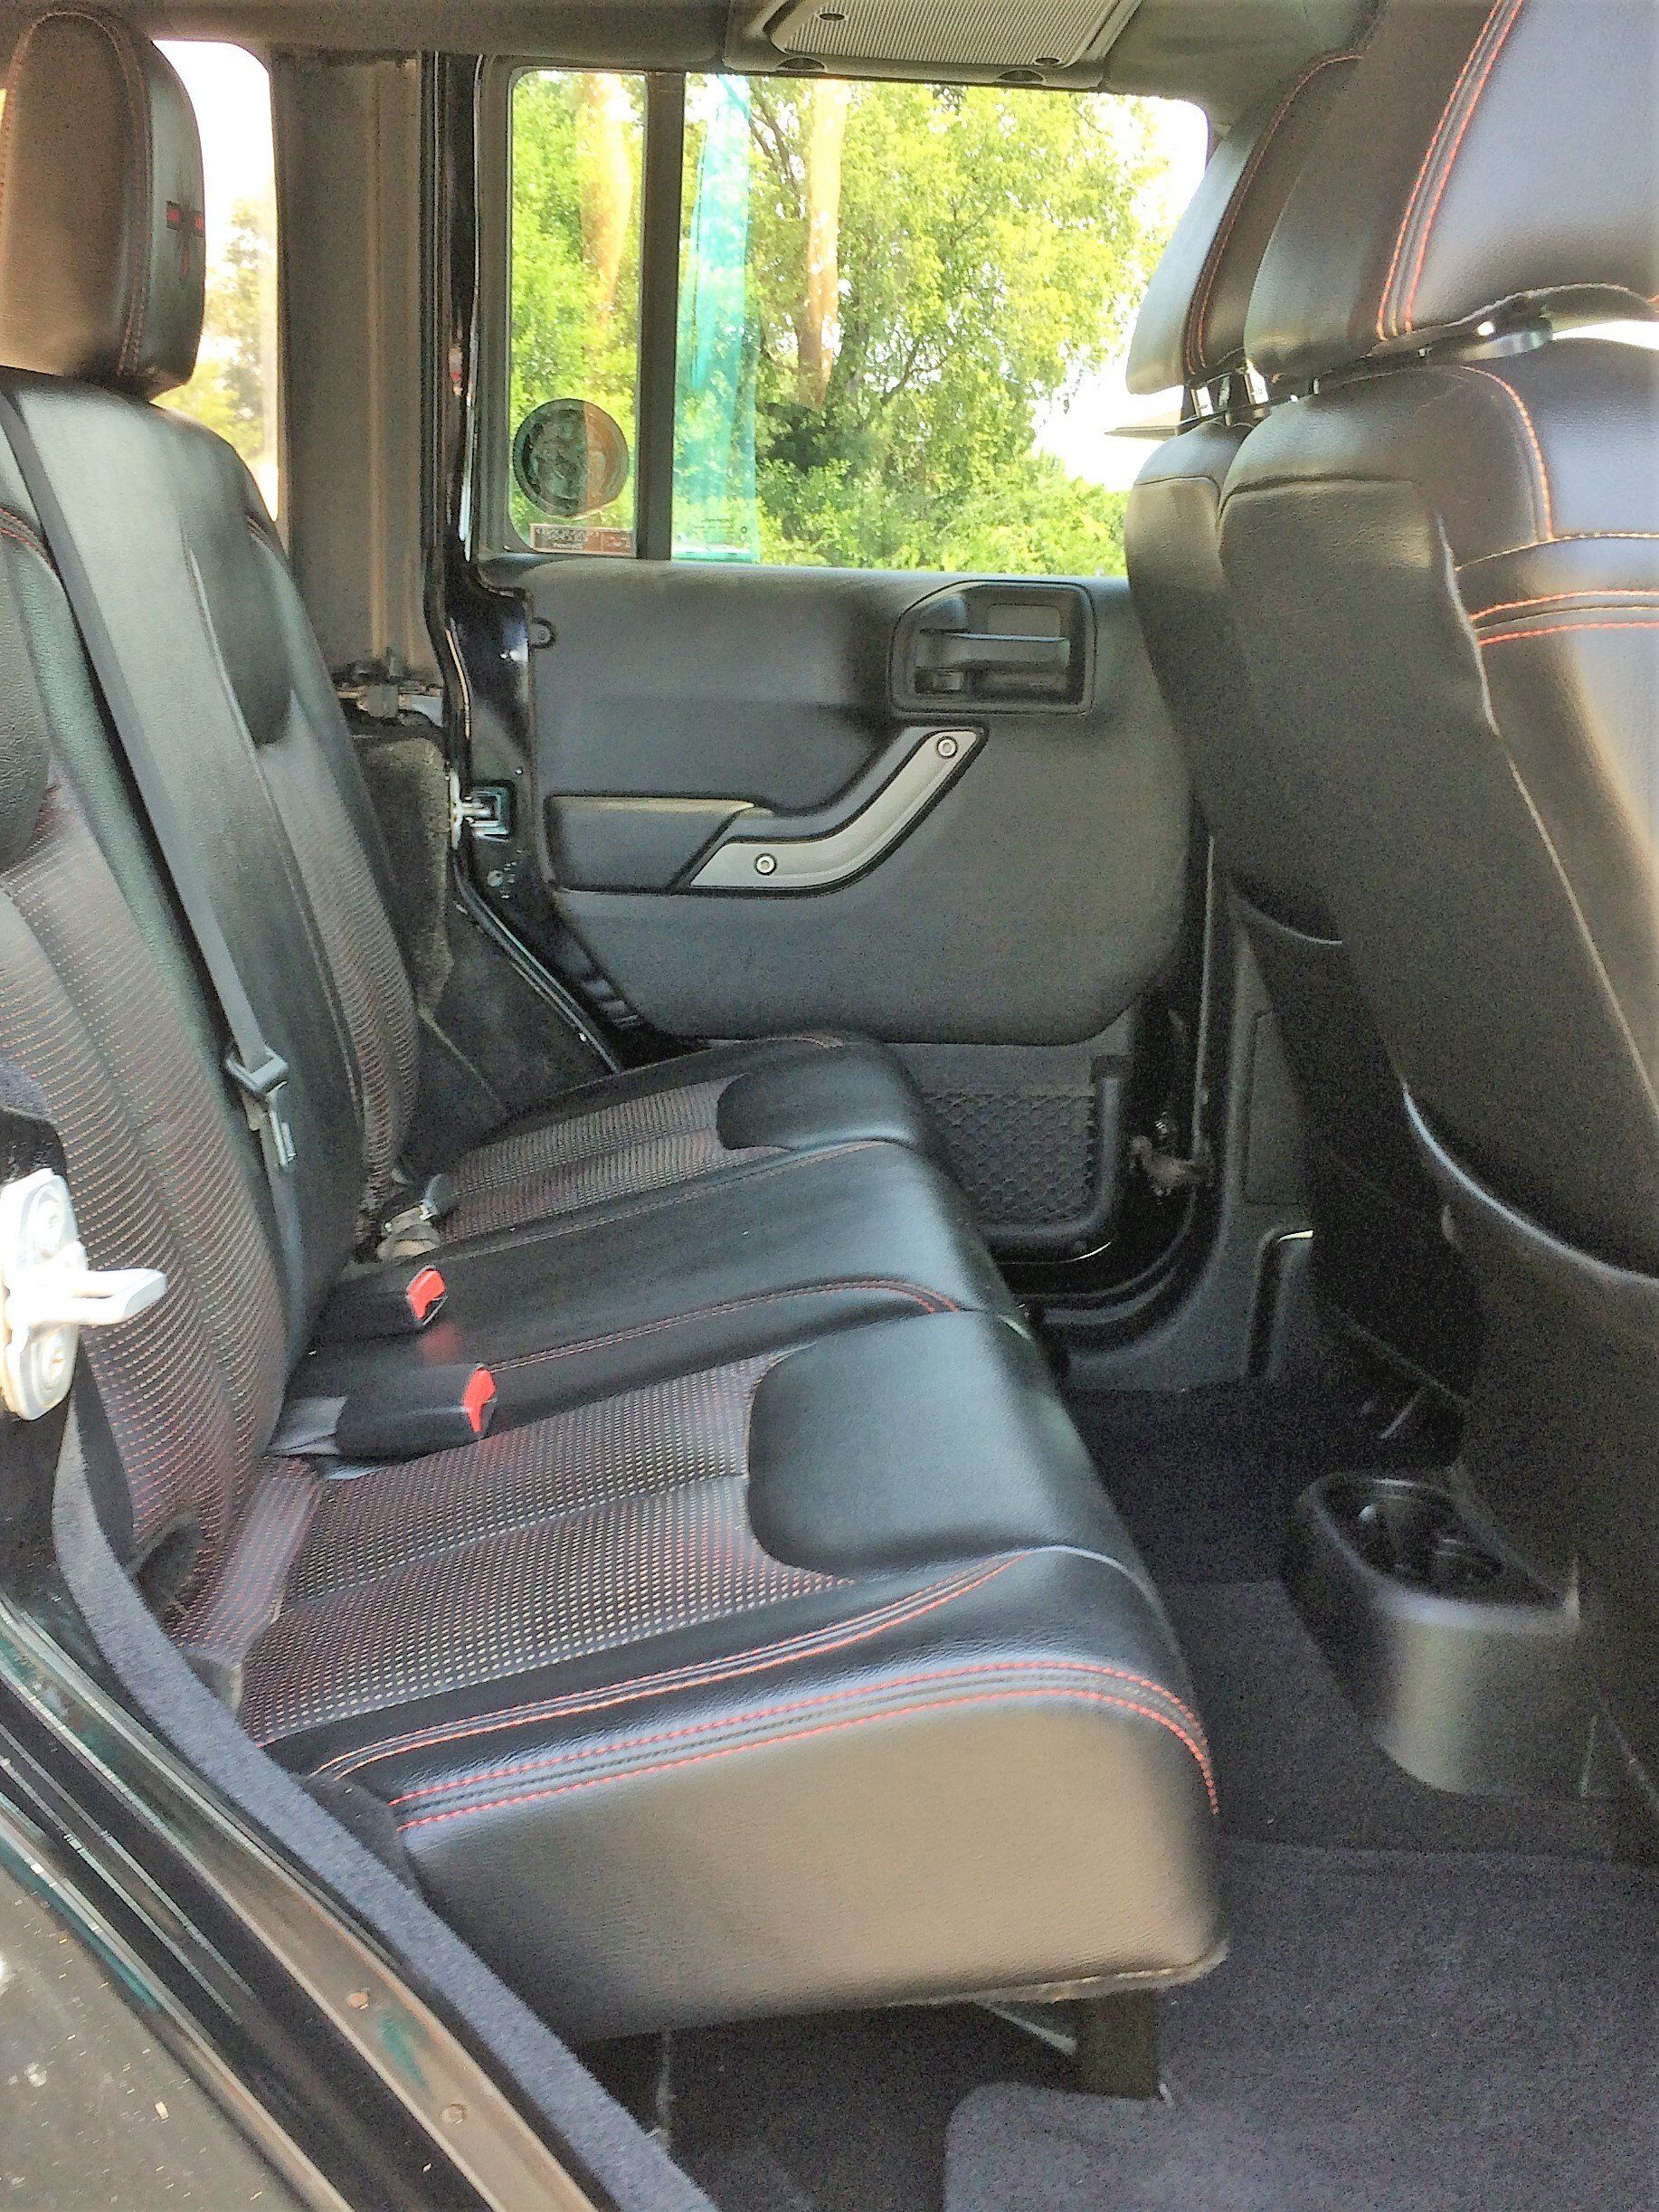 Clean car seats